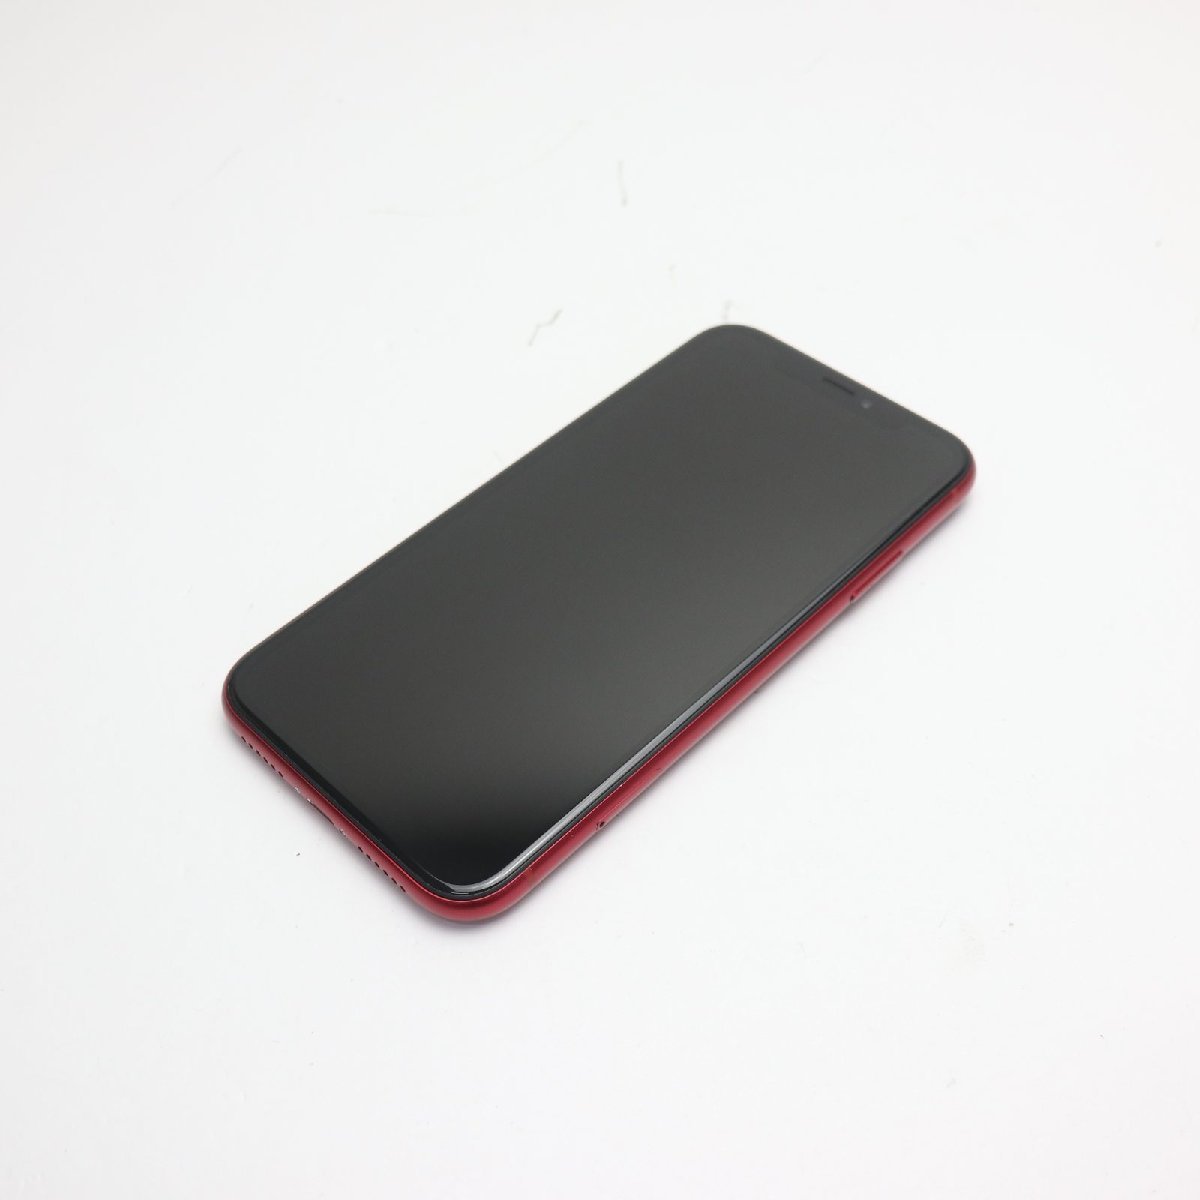 最高の品質の 中古 白ロム スマホ RED レッド 128GB iPhoneXR SIM